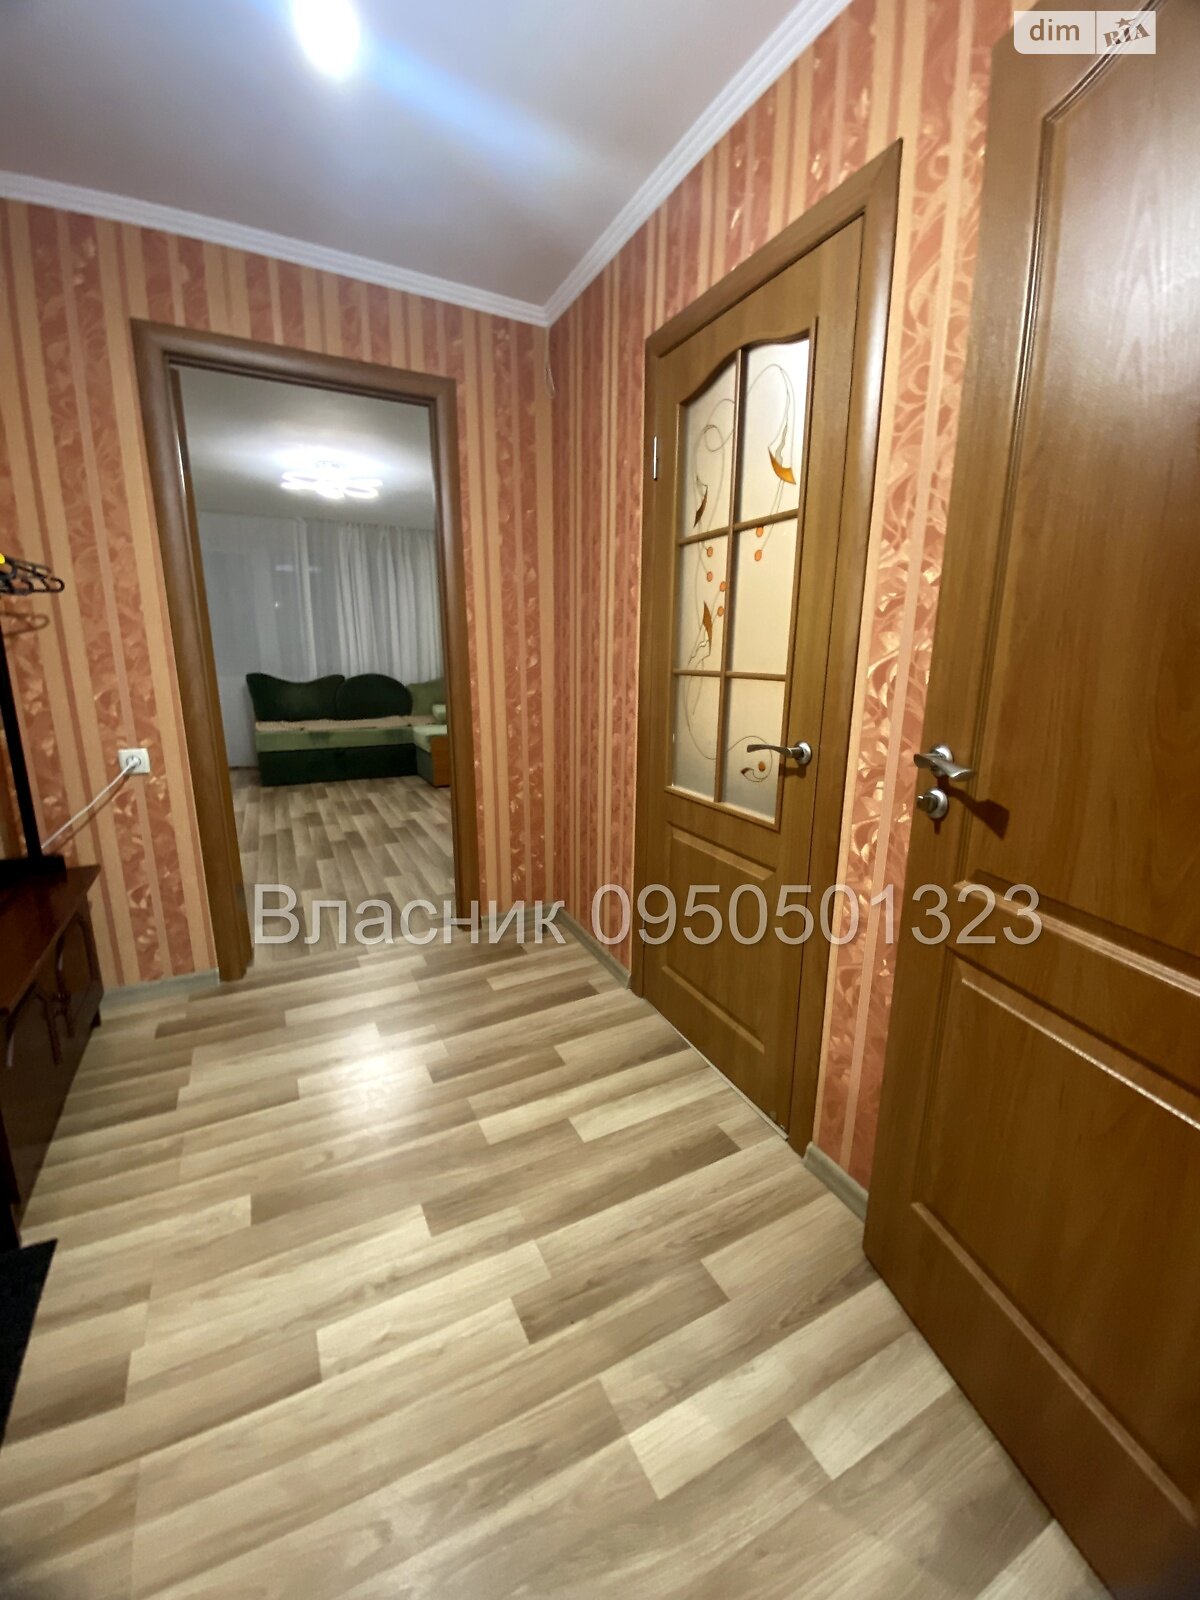 Продажа двухкомнатной квартиры в Полтаве, на ул. Баленко 12, кв. 18, район Браилки фото 1